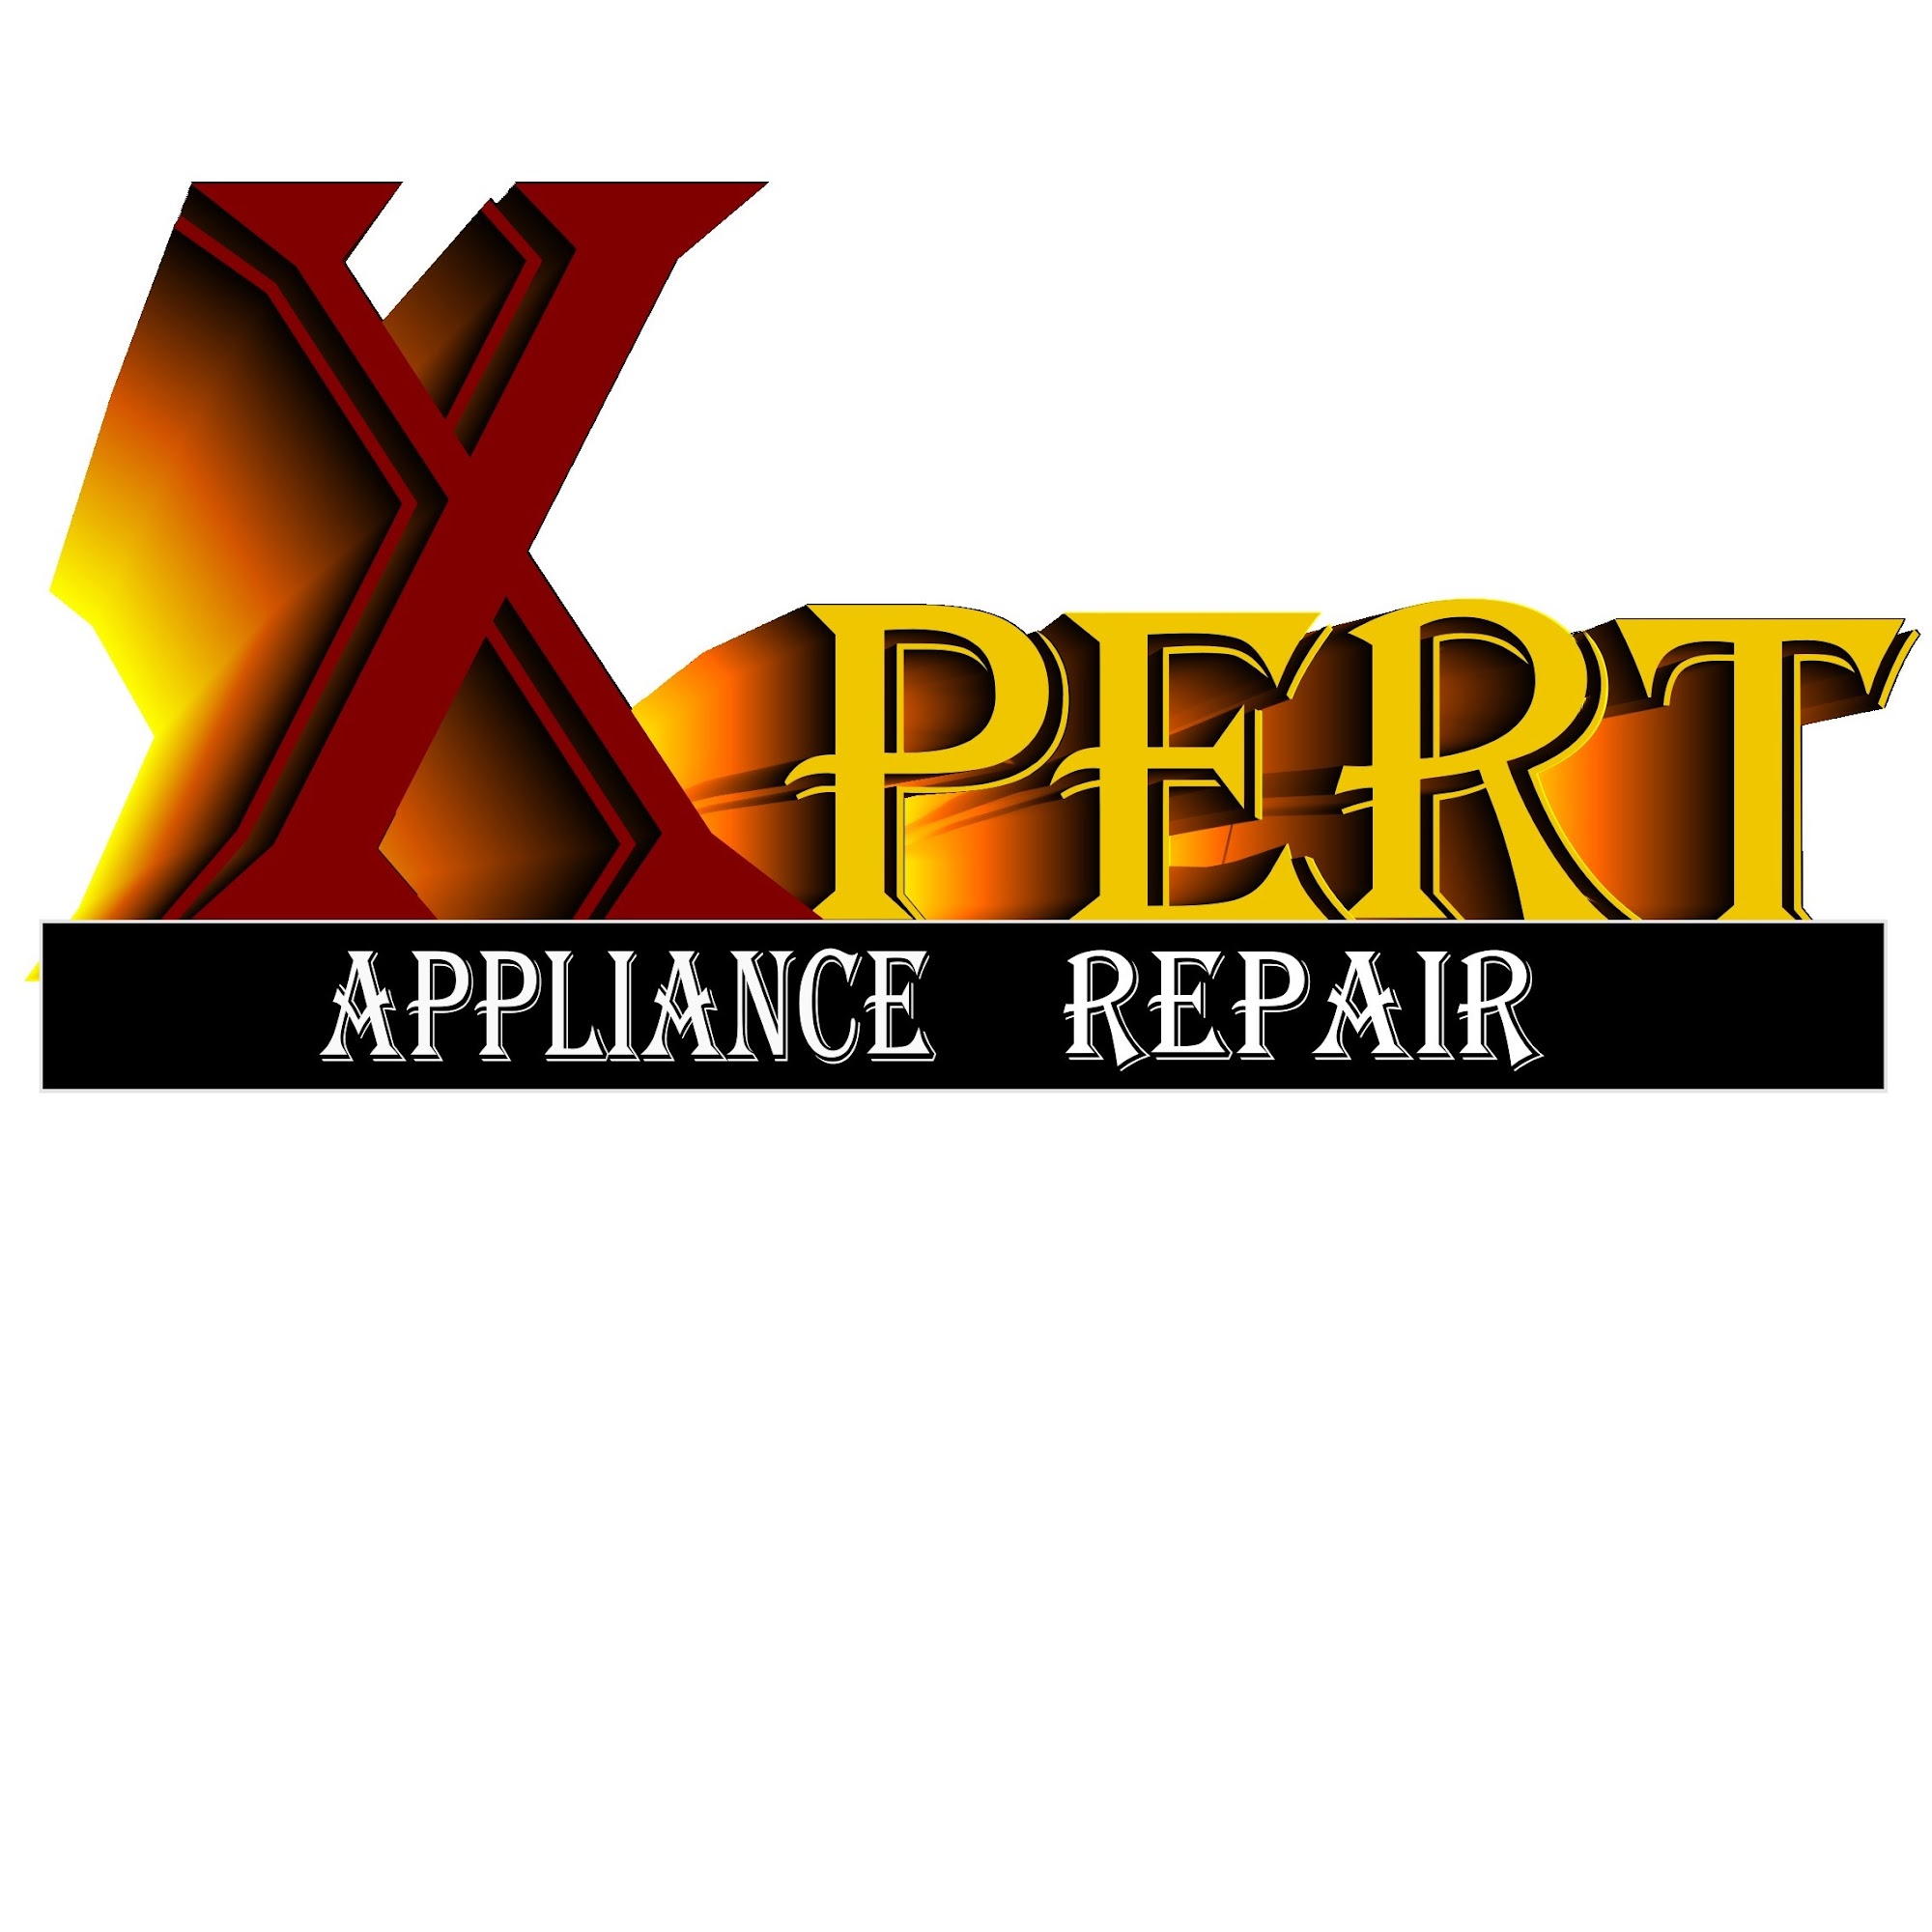 XPERT APPLIANCE REPAIR SERVICE 39 N Church St, Nunda New York 14517